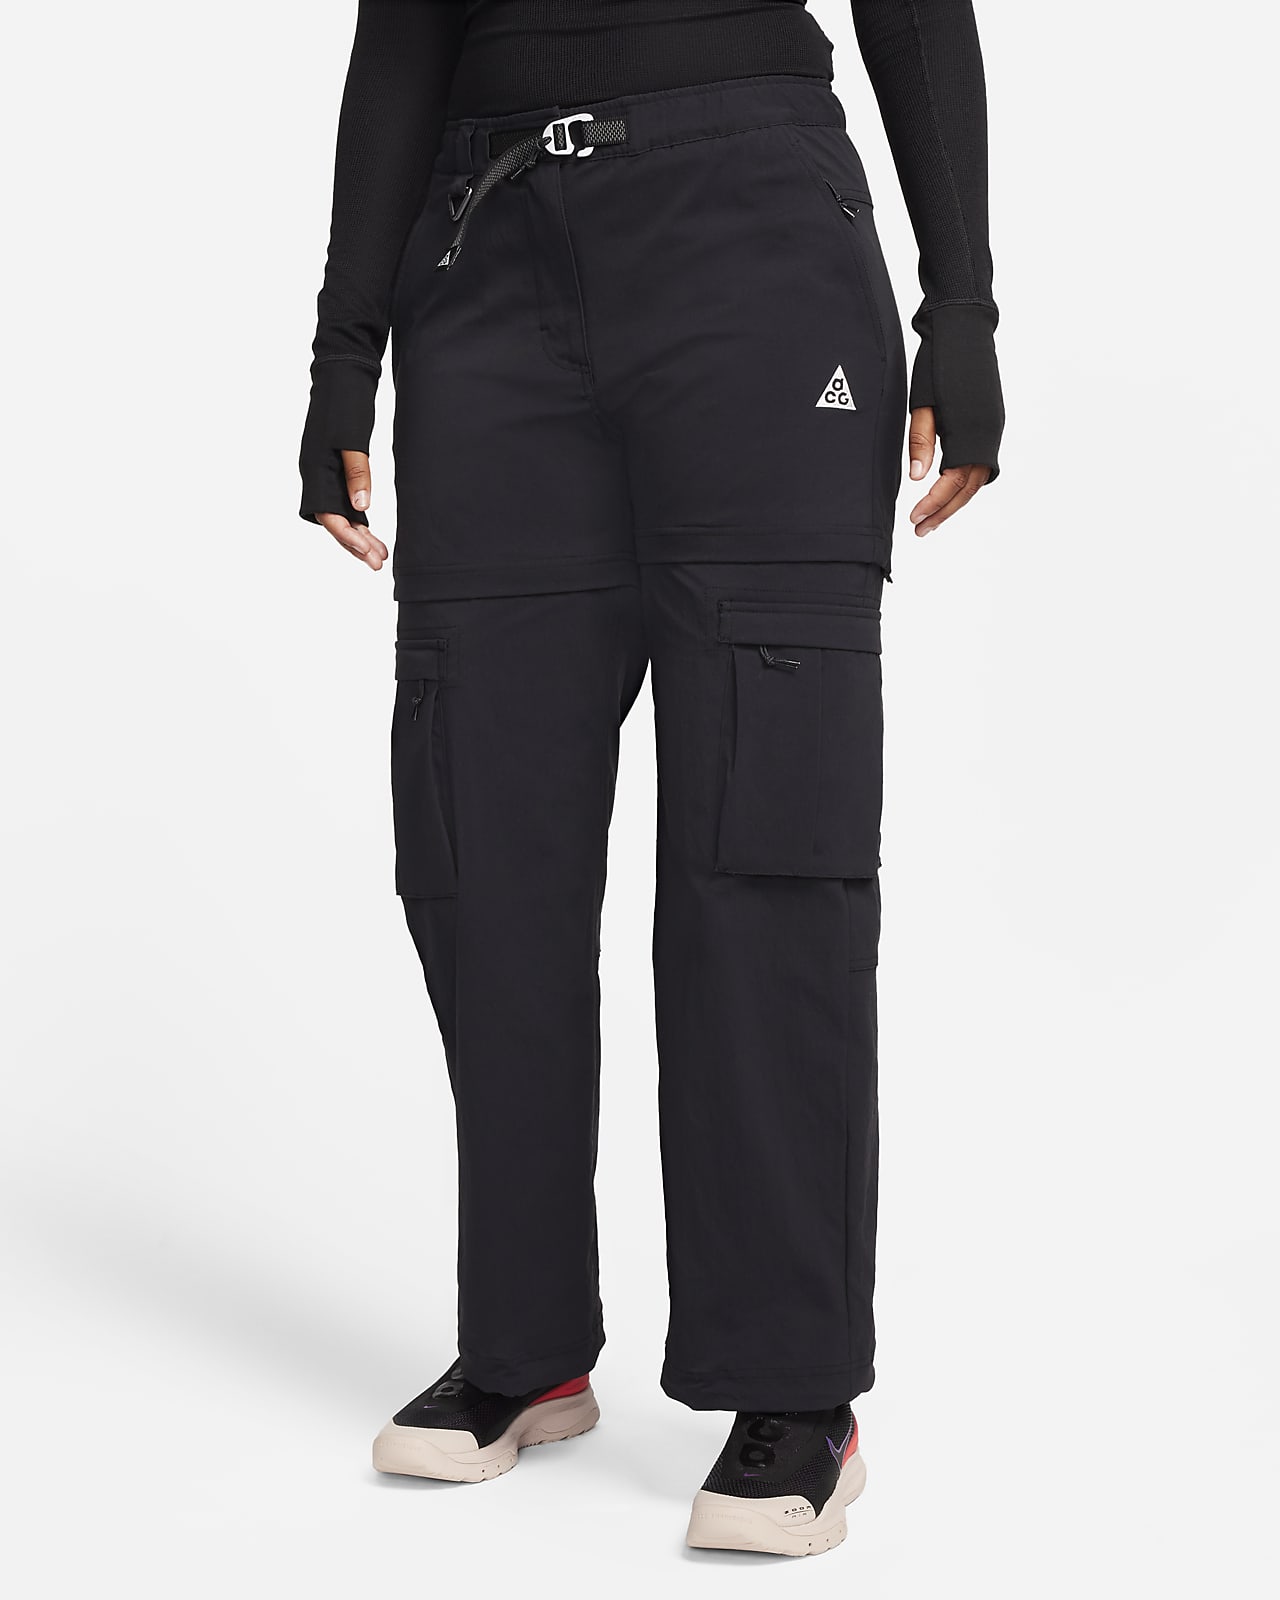 Pantalon à zip Nike ACG « Smith Summit » pour femme